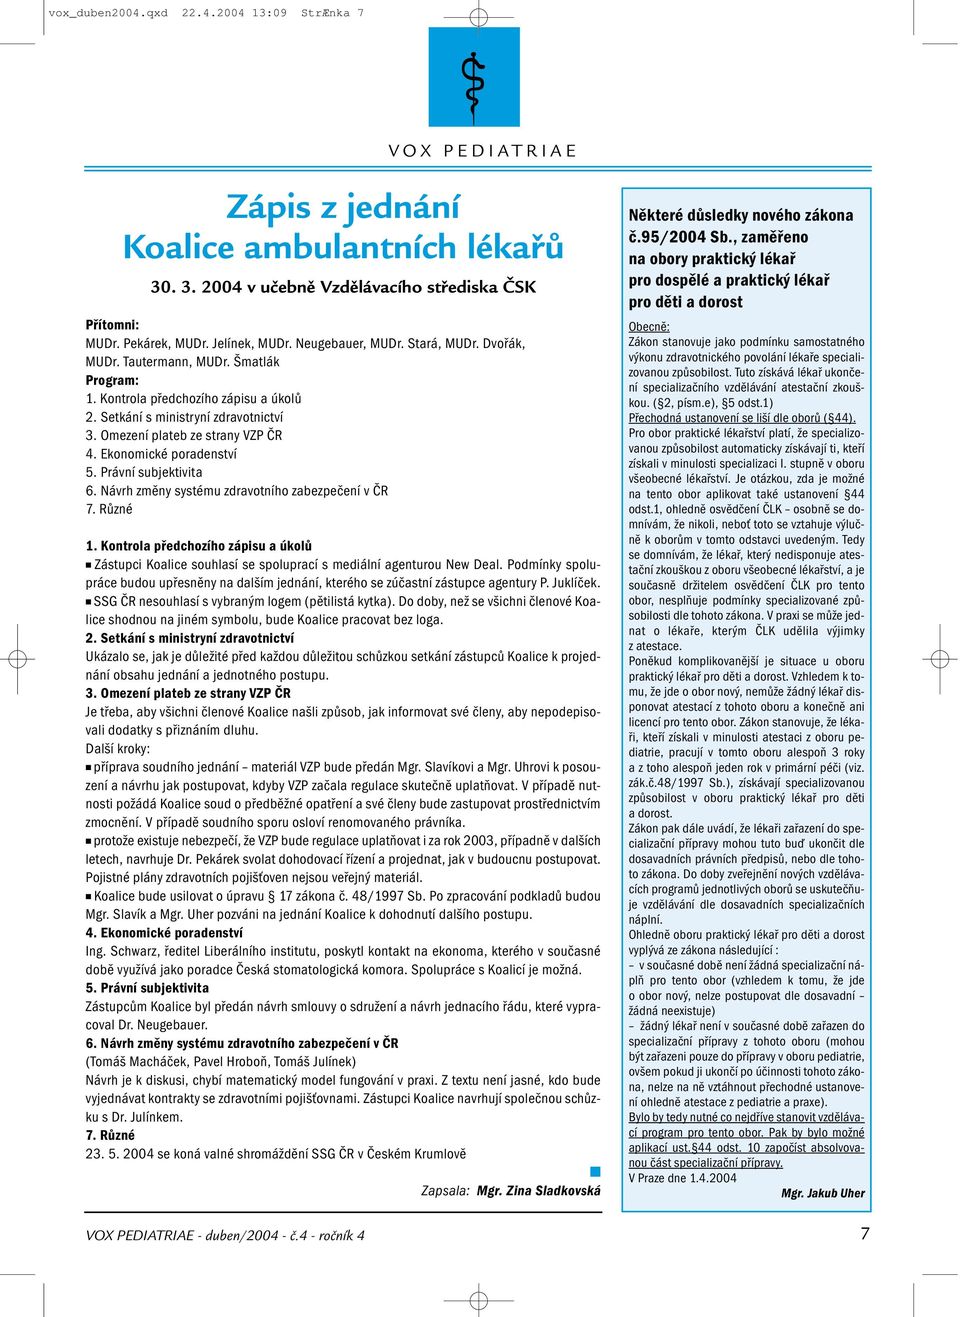 Ekonomické poradenství 5. Právní subjektivita 6. Návrh změny systému zdravotního zabezpečení v ČR 7. Různé 1.